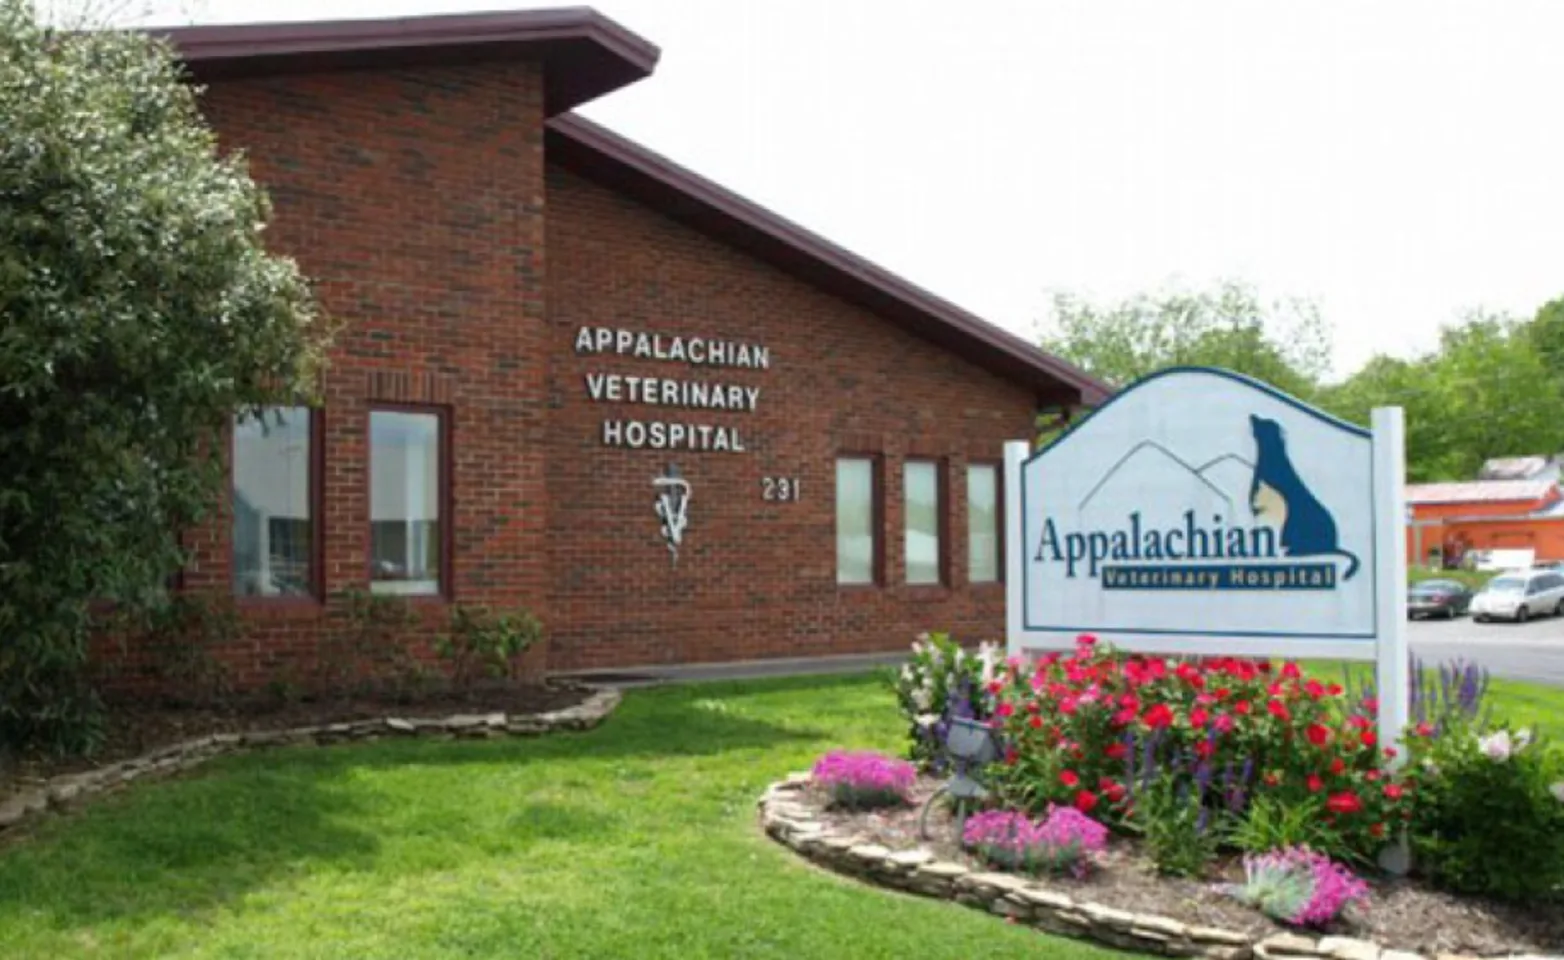 Exterior of Appalachian Veterinary Hospital